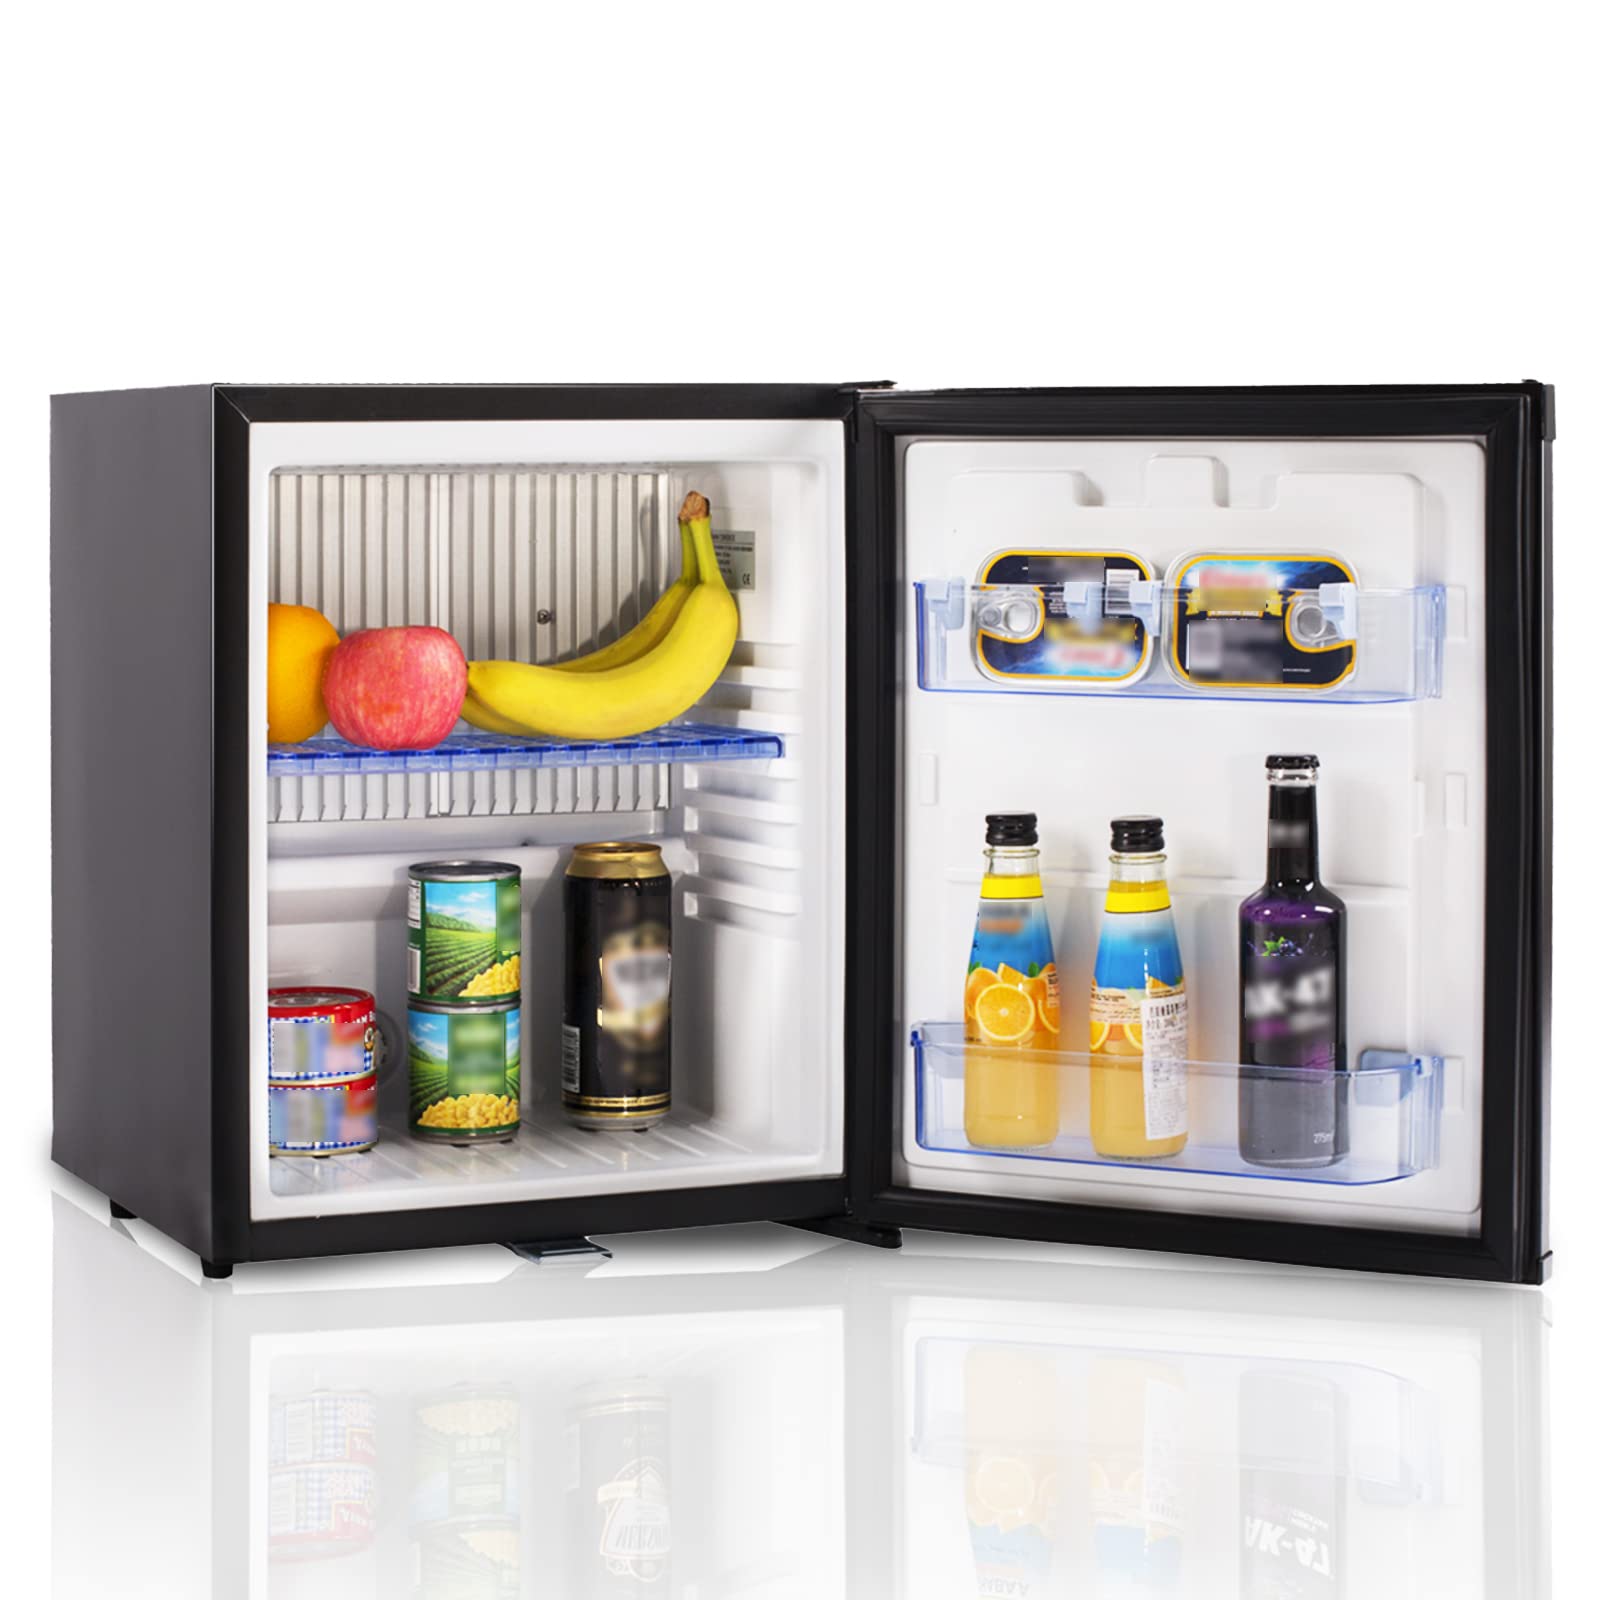 SMAD Mini-Kühlschrank - 30L kompakter und vielseitiger Absorptionskühlschrank mit Schloss für Zuhause, Hotel, Wohnmobil, Camping - AC/DC, 0-10℃, leise Kühlung, umweltfreundlich, reversible Tür